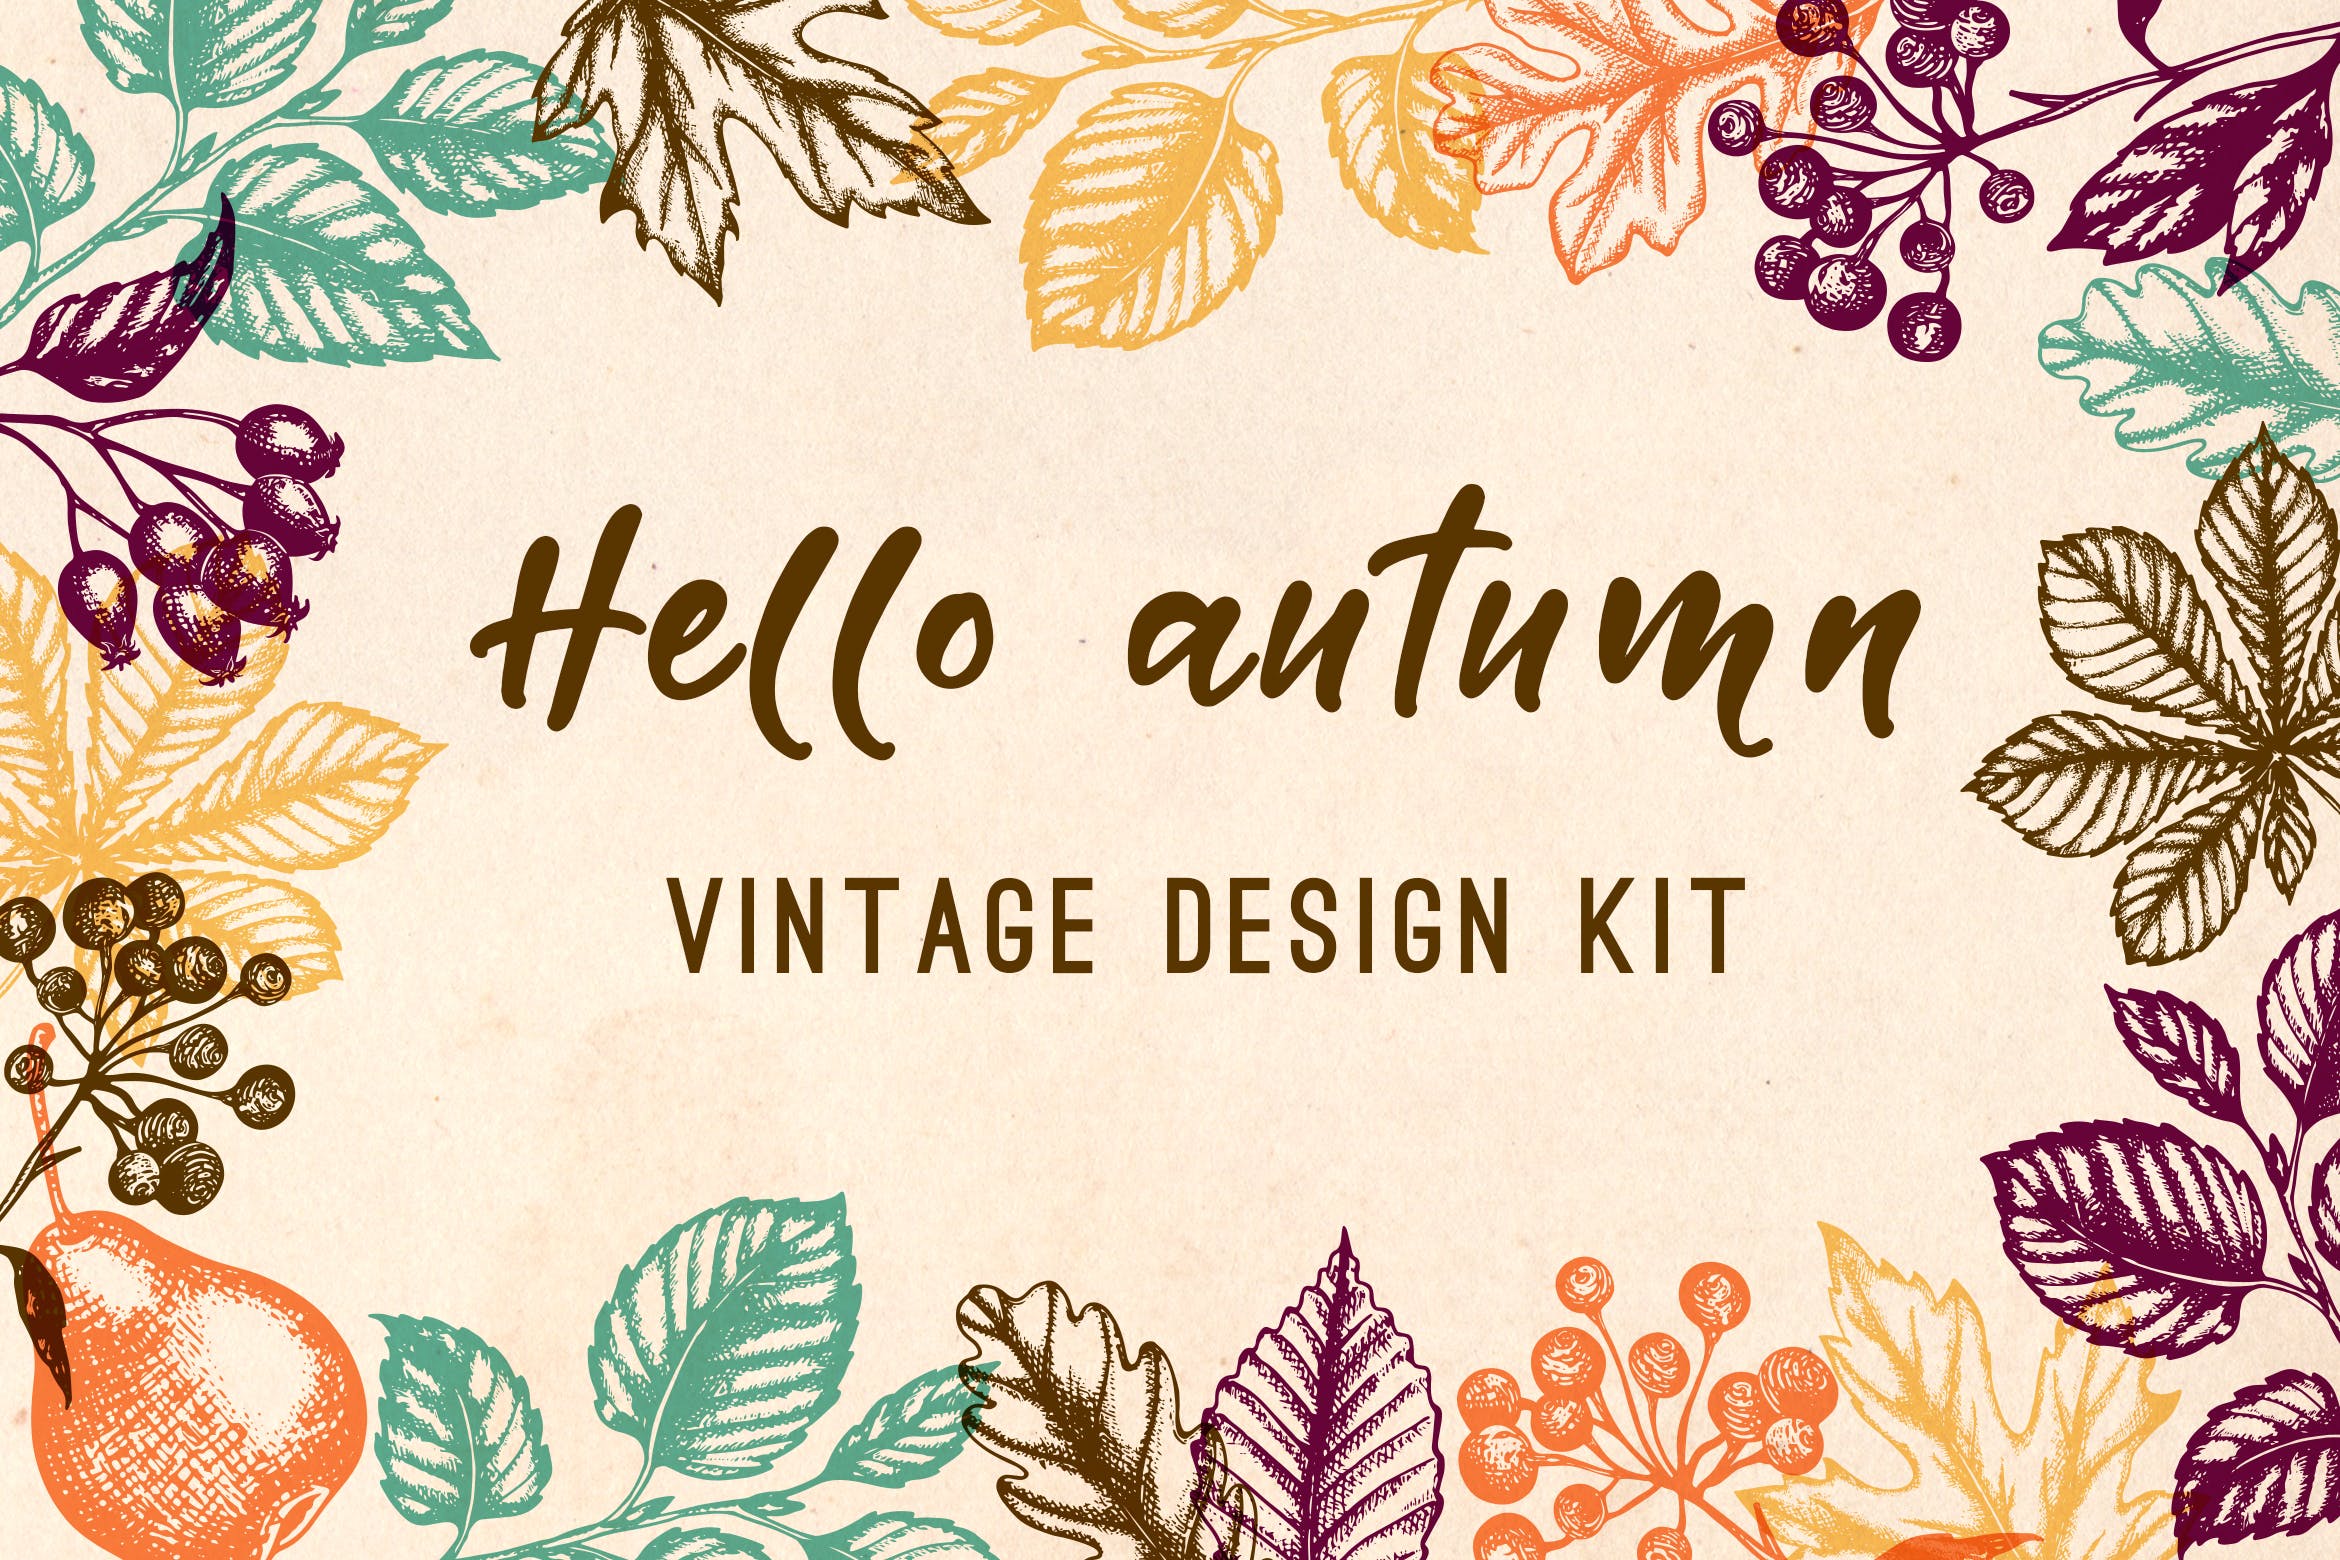 水果手绘杂点风格装饰图案素材下载Vintage Autumn Design Kit